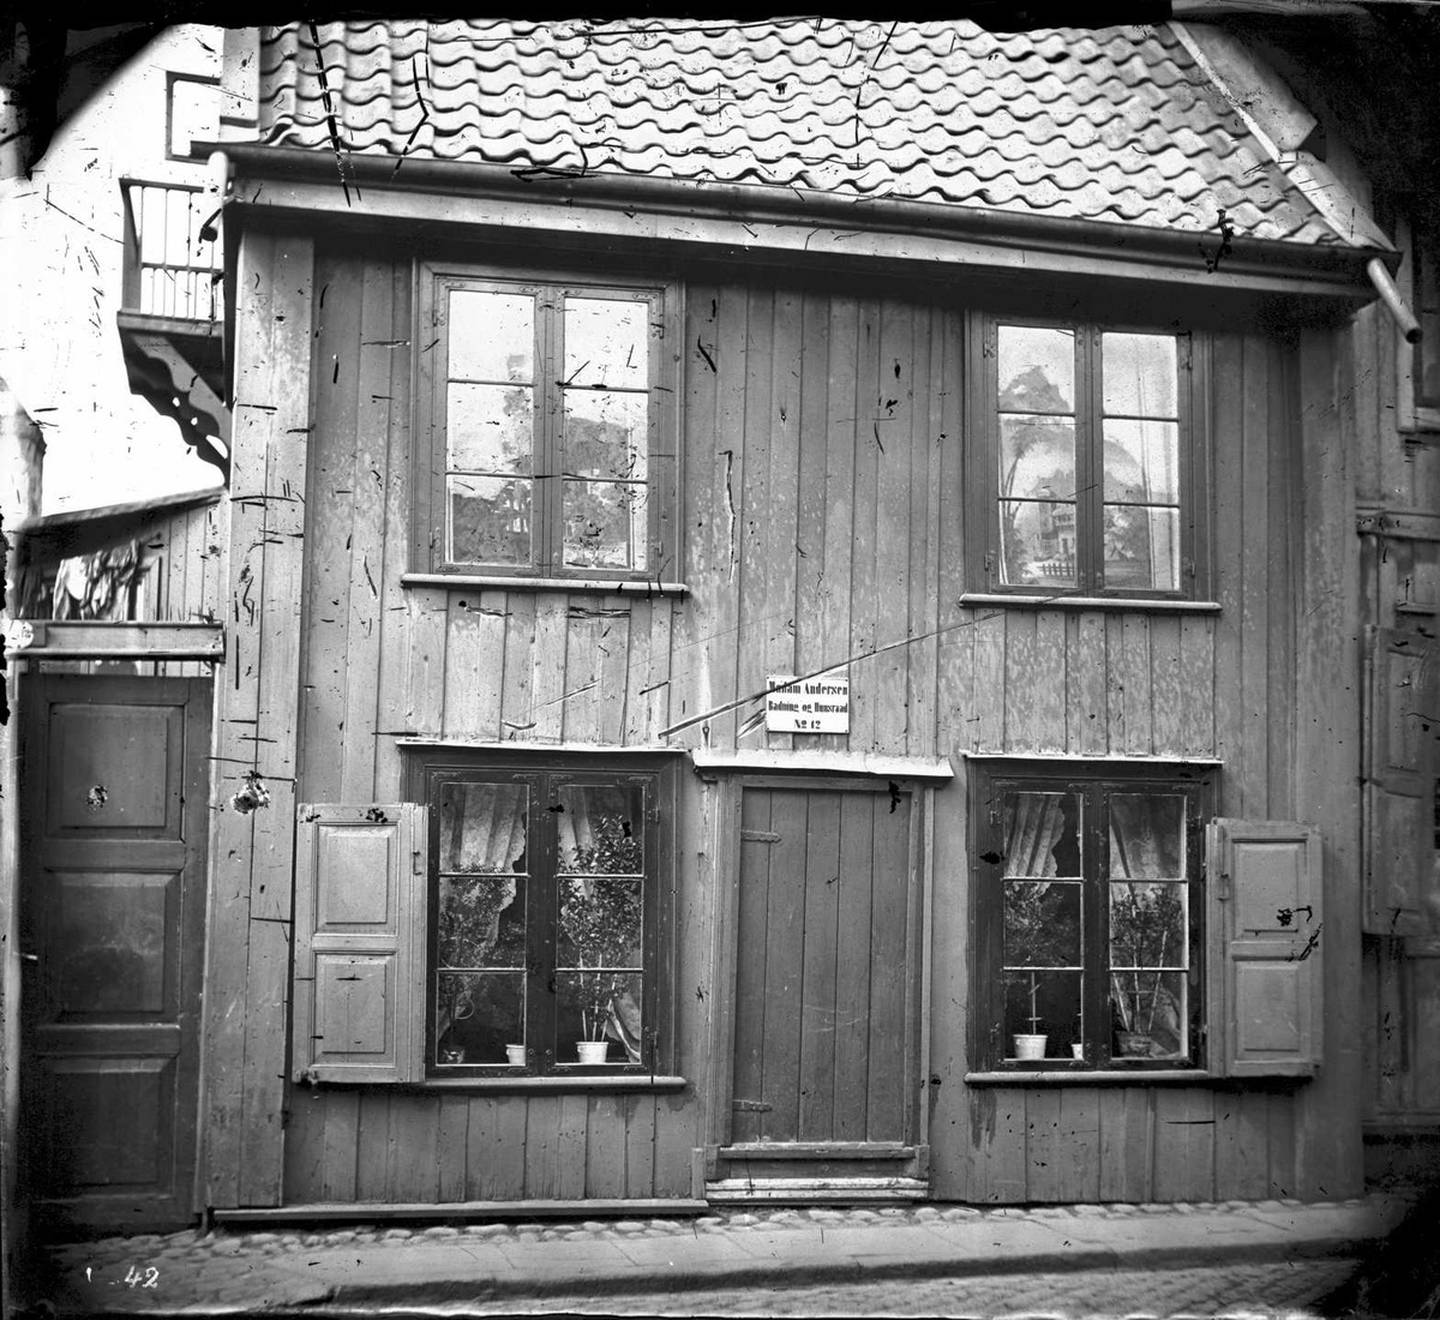 “Madam Andersen - Badning og Husraad” står det over døra. Huset ser innbydende og koselig ut, med dekorative rullegardiner og velsteltepotteplanter.